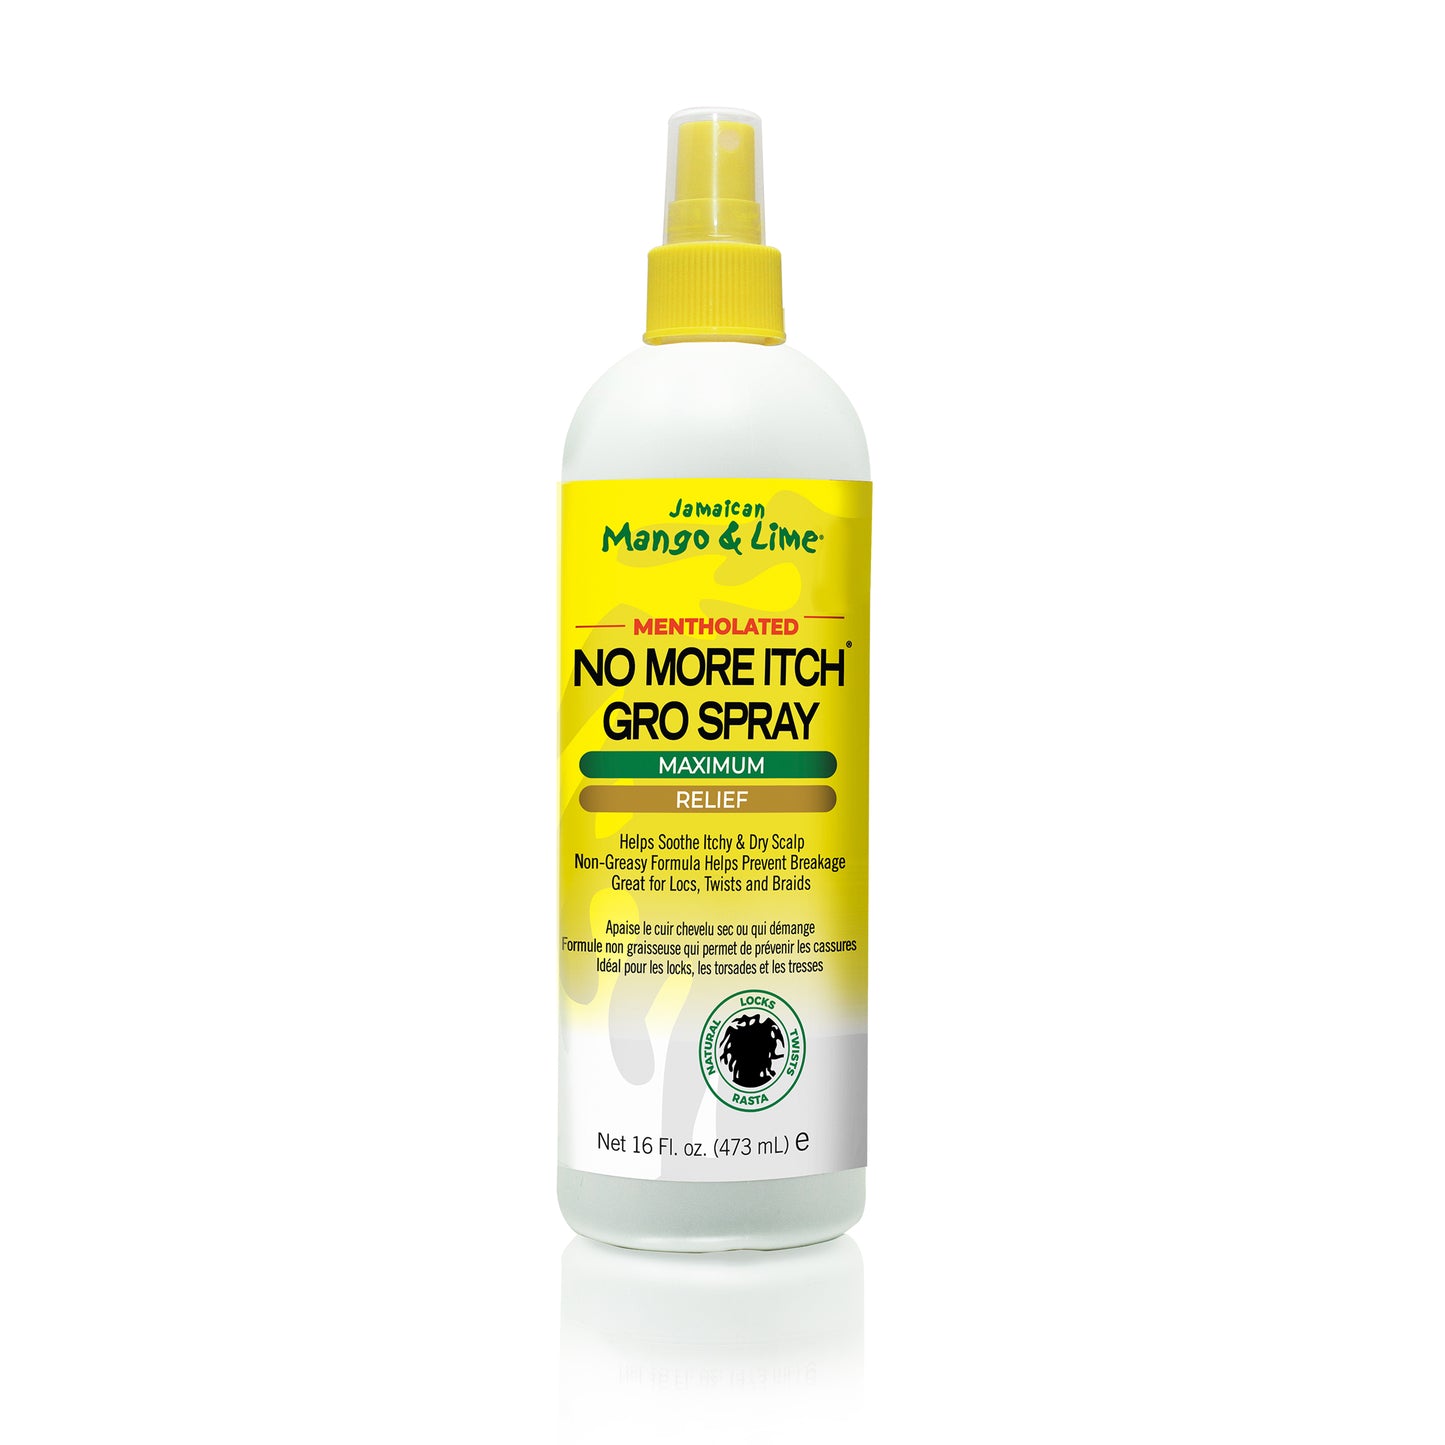 Jamaican Mango & Lime Mentholated No More Itch Gro Spray 8 oz